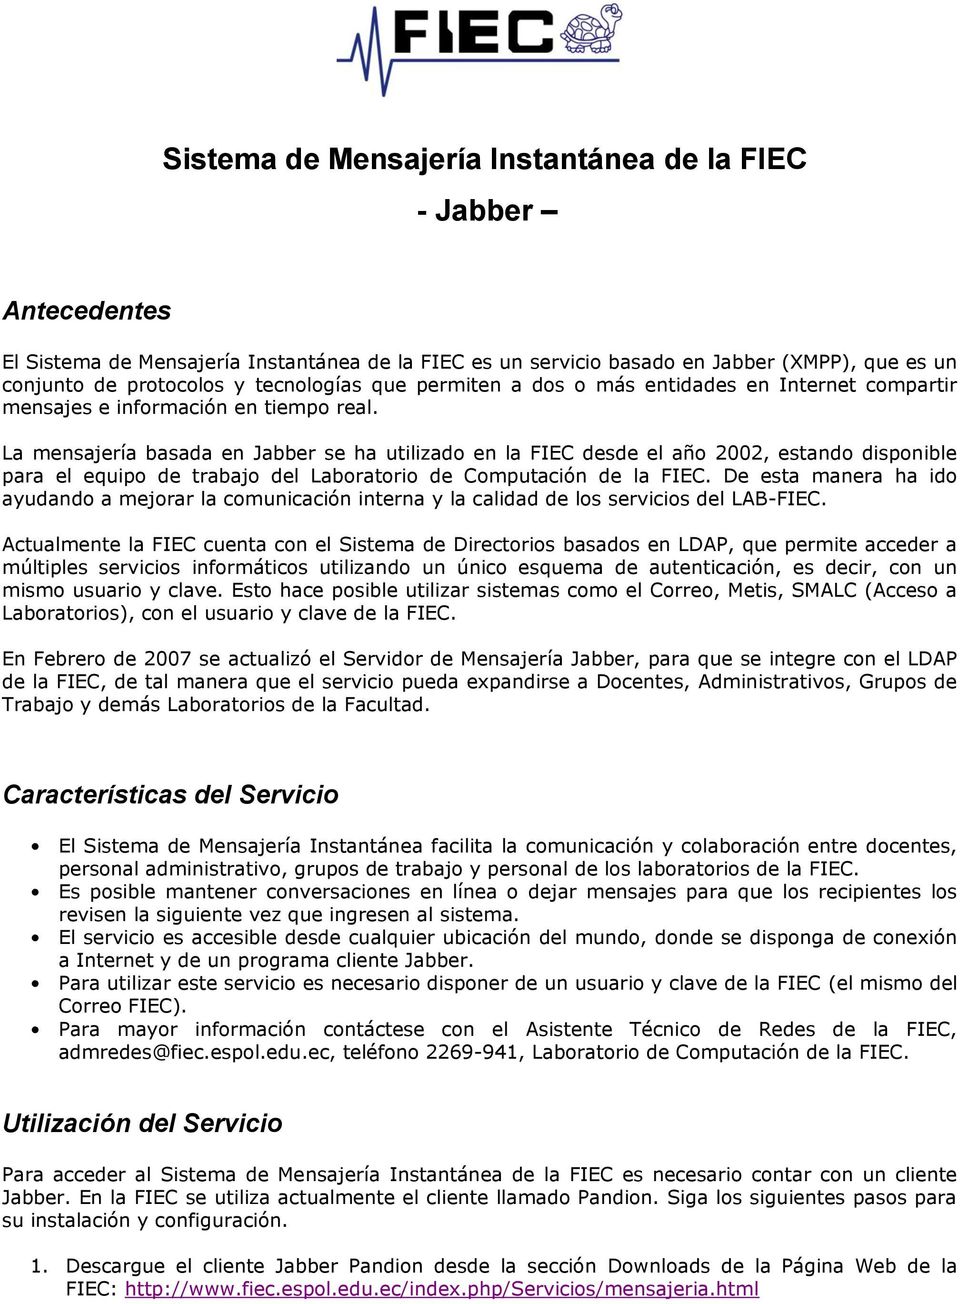 La mensajería basada en Jabber se ha utilizado en la FIEC desde el año 2002, estando disponible para el equipo de trabajo del Laboratorio de Computación de la FIEC.